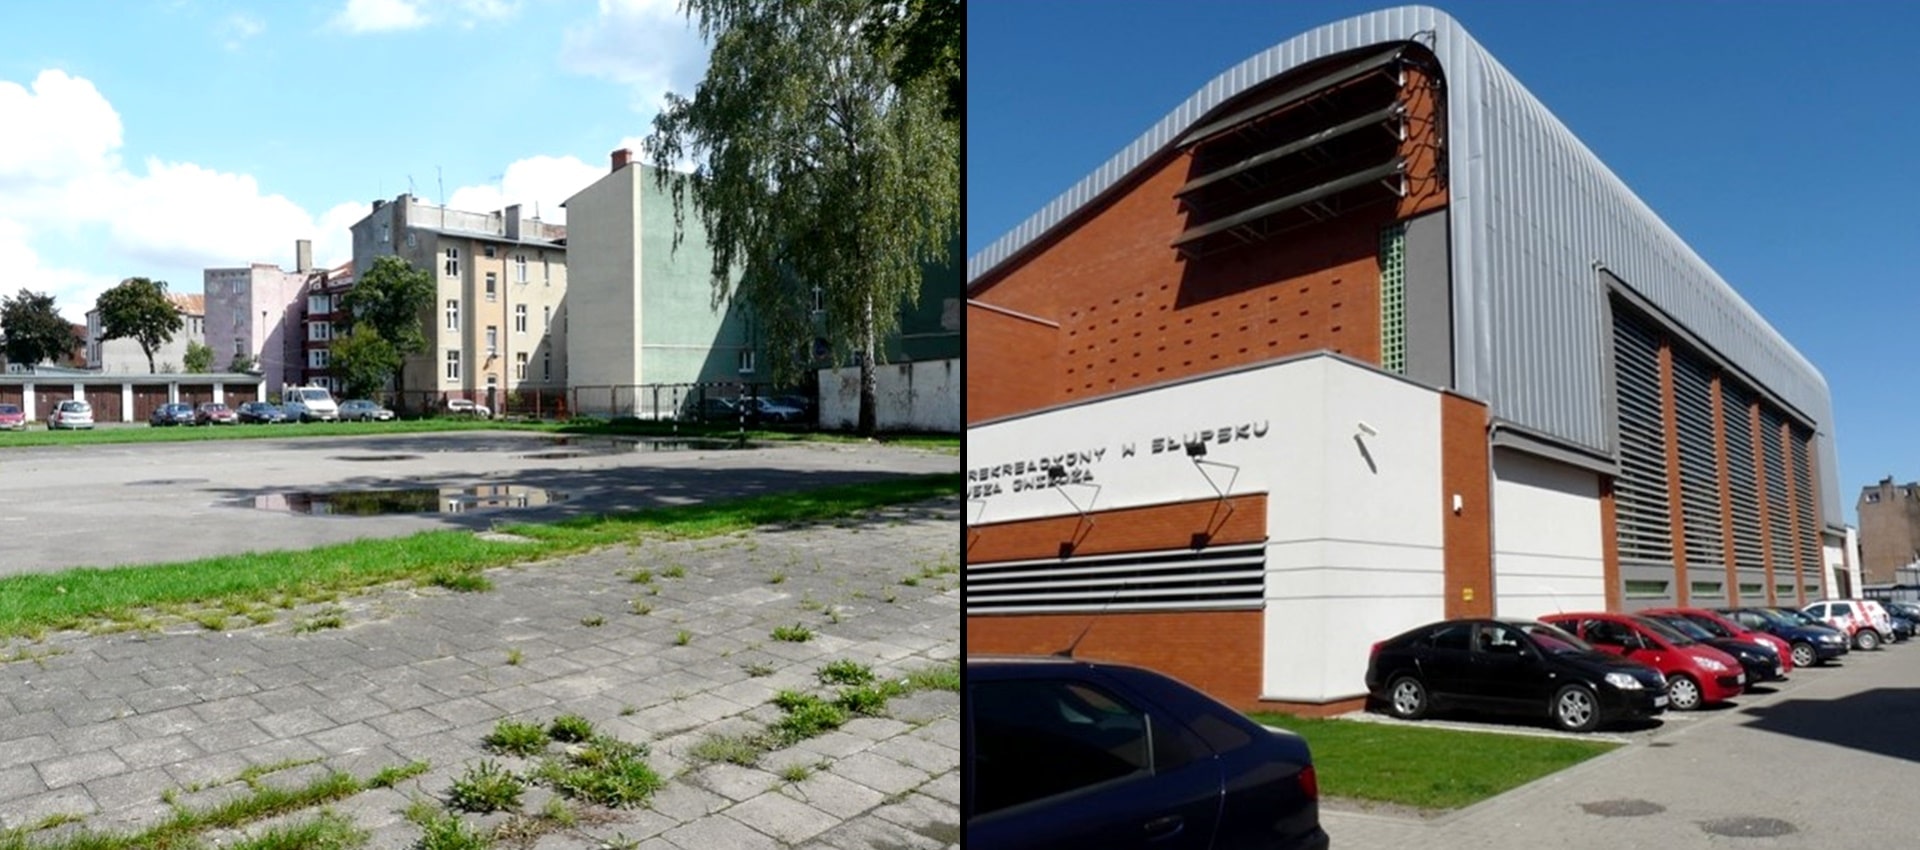 Dwa połączone ze sobą zdjęcia, na zdjęciu po lewej stronie pusty betonowy plac, a po prawej stronie wybudowany budynek